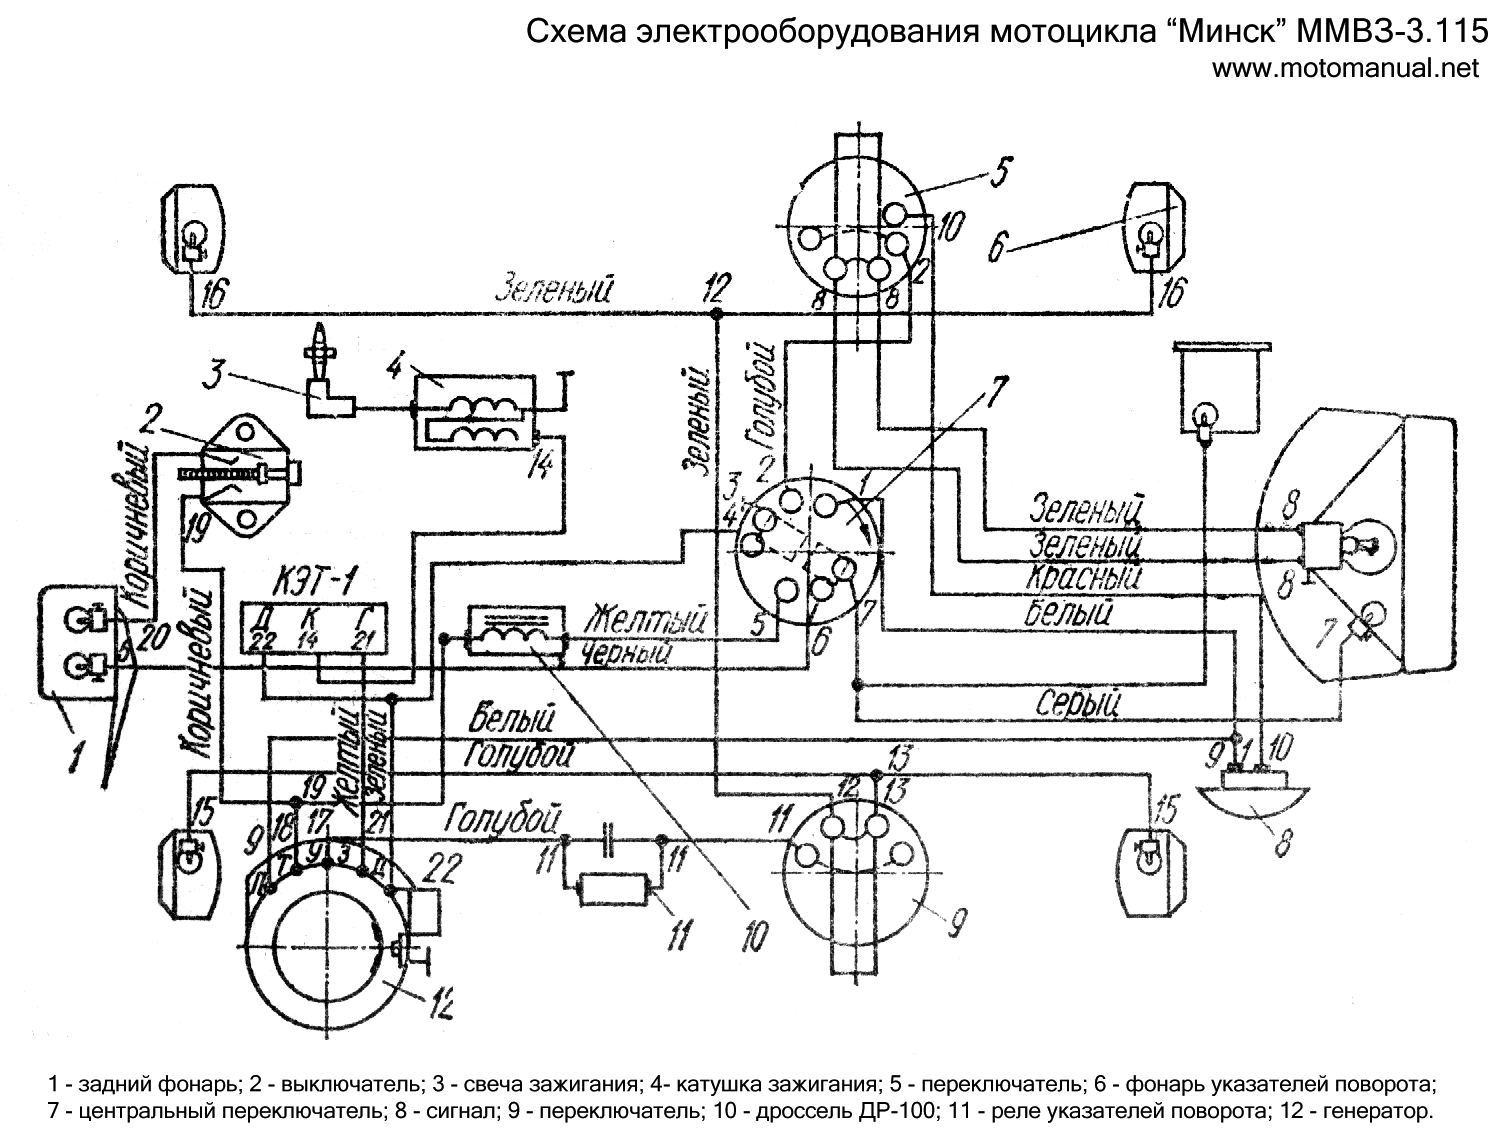 Электрическая схема мотоцикла МИНСК ММВЗ-3.115